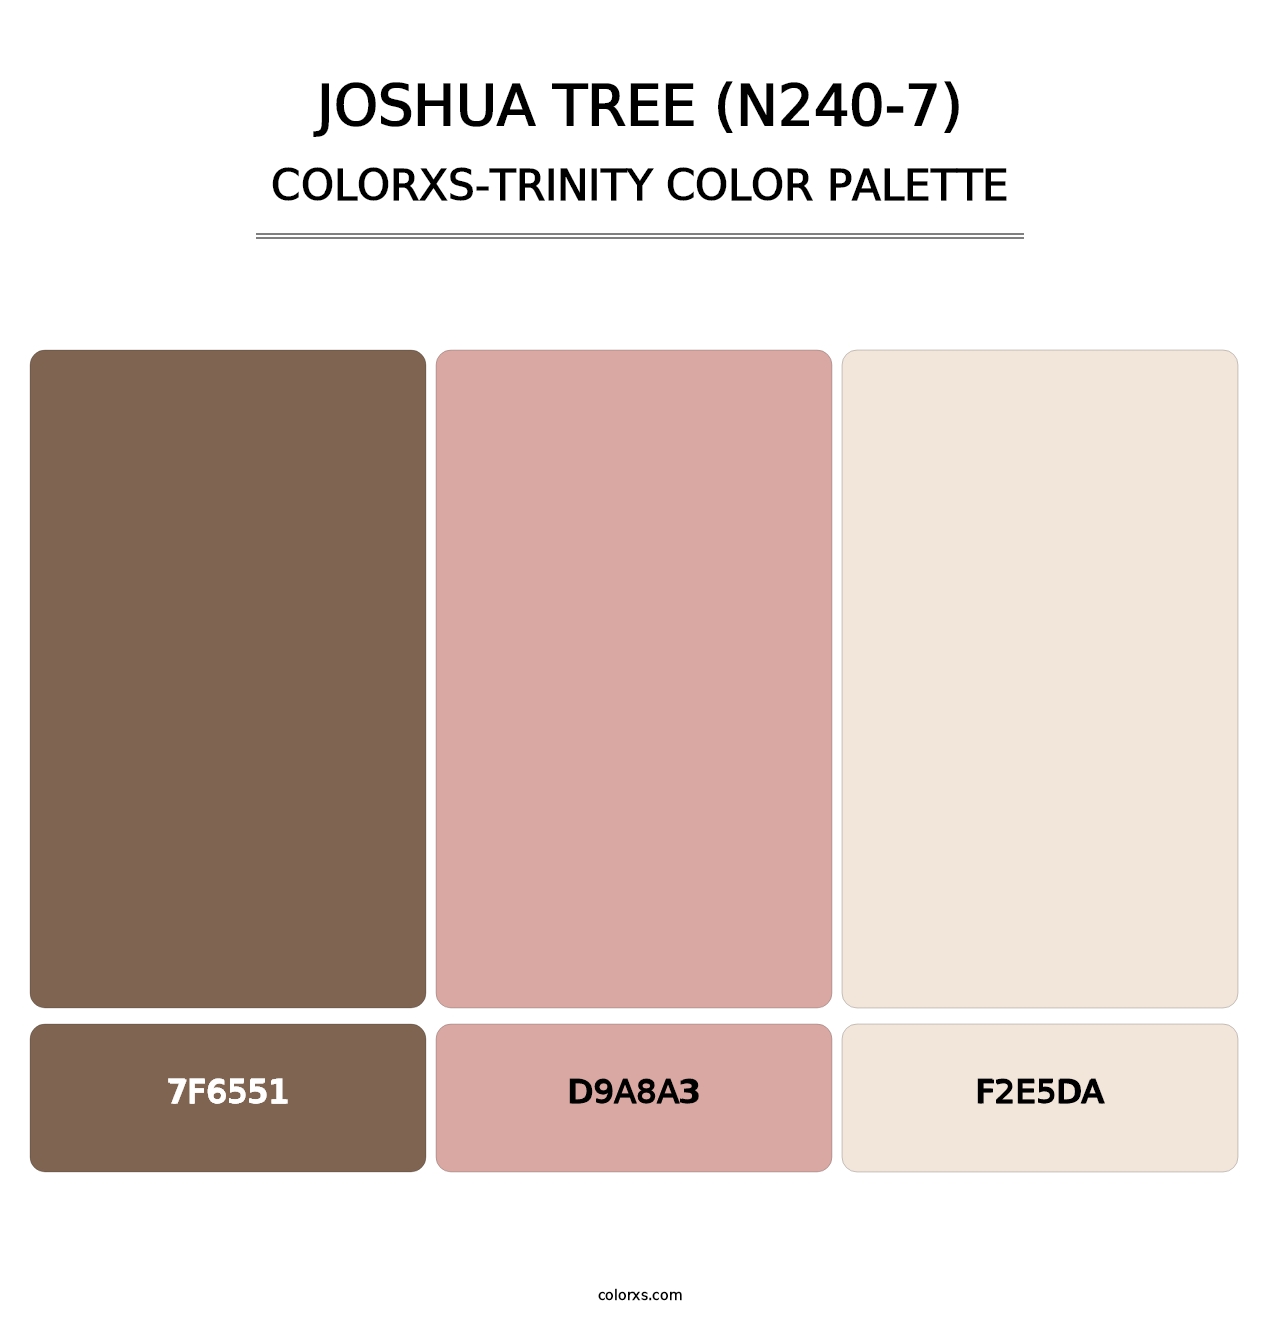 Joshua Tree (N240-7) - Colorxs Trinity Palette